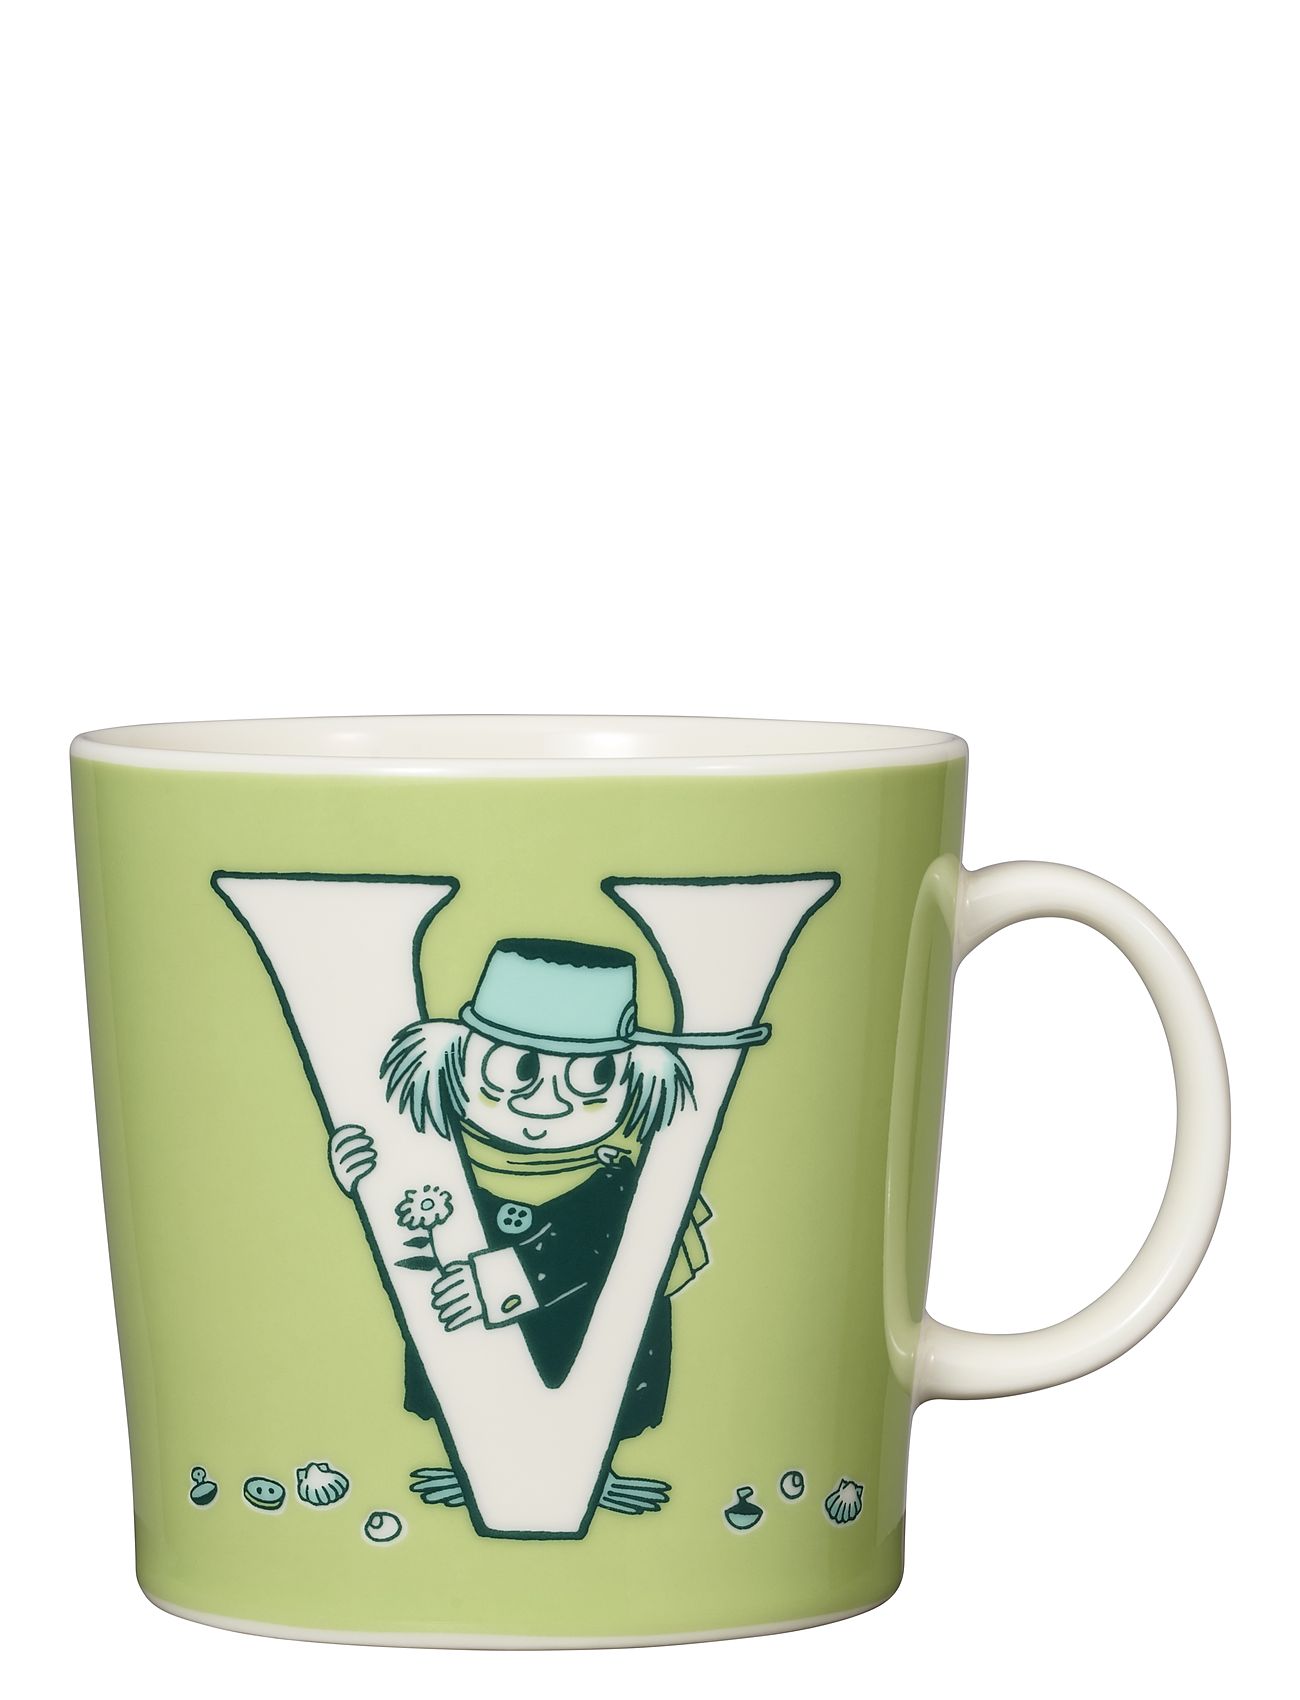 Moomin Mug 04L Abc V Home Tableware Cups & Mugs Coffee Cups Green Arabia